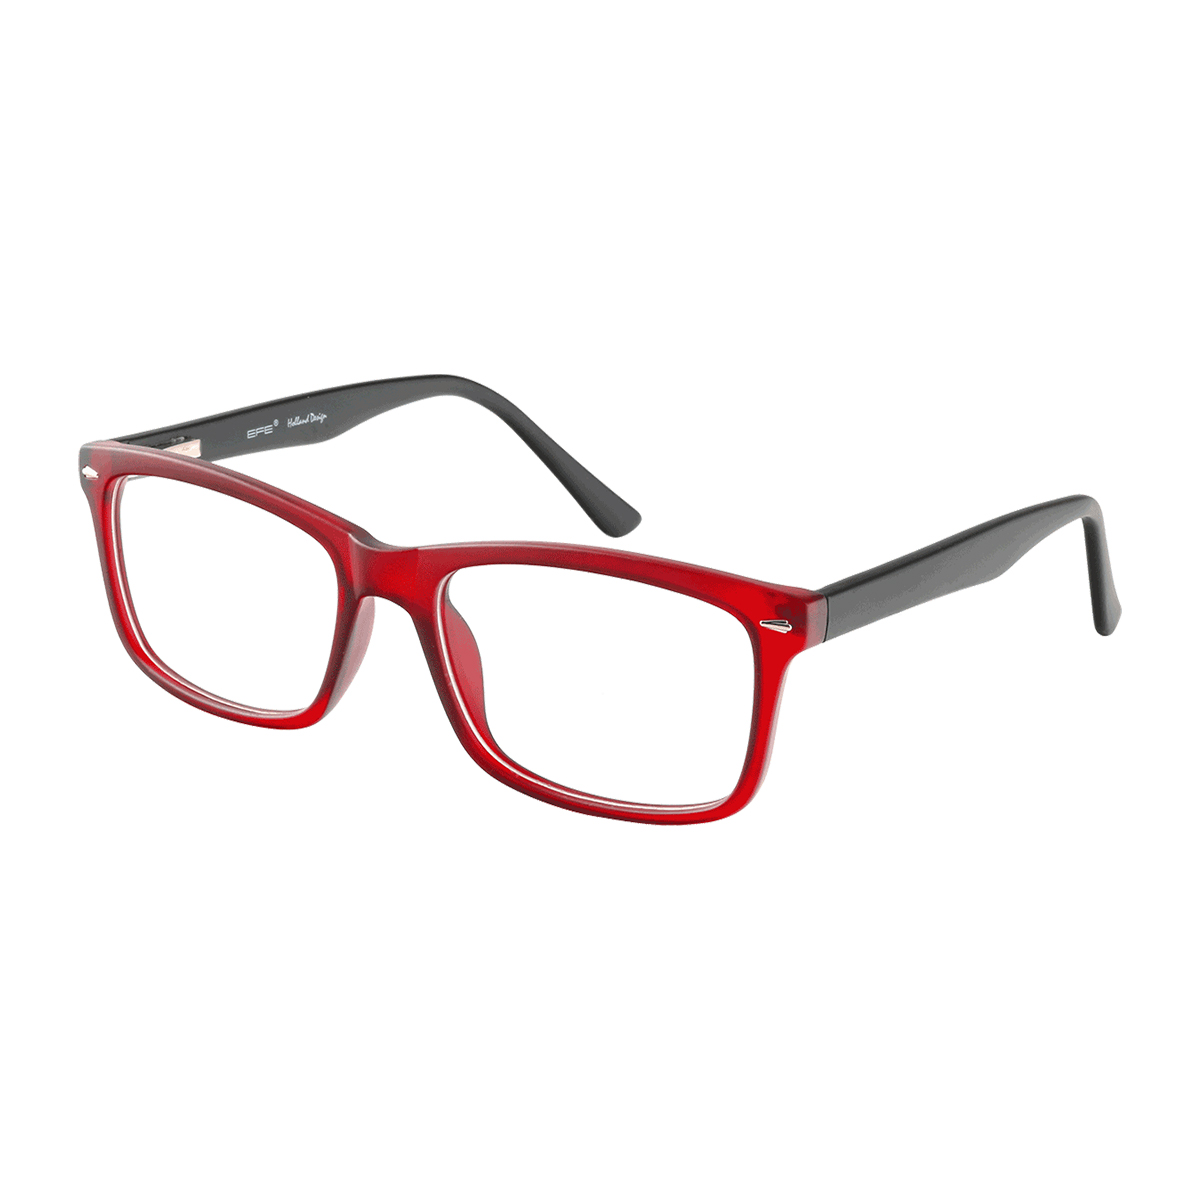 Ernie - Square Red-Black Reading Glasses for Men & Women